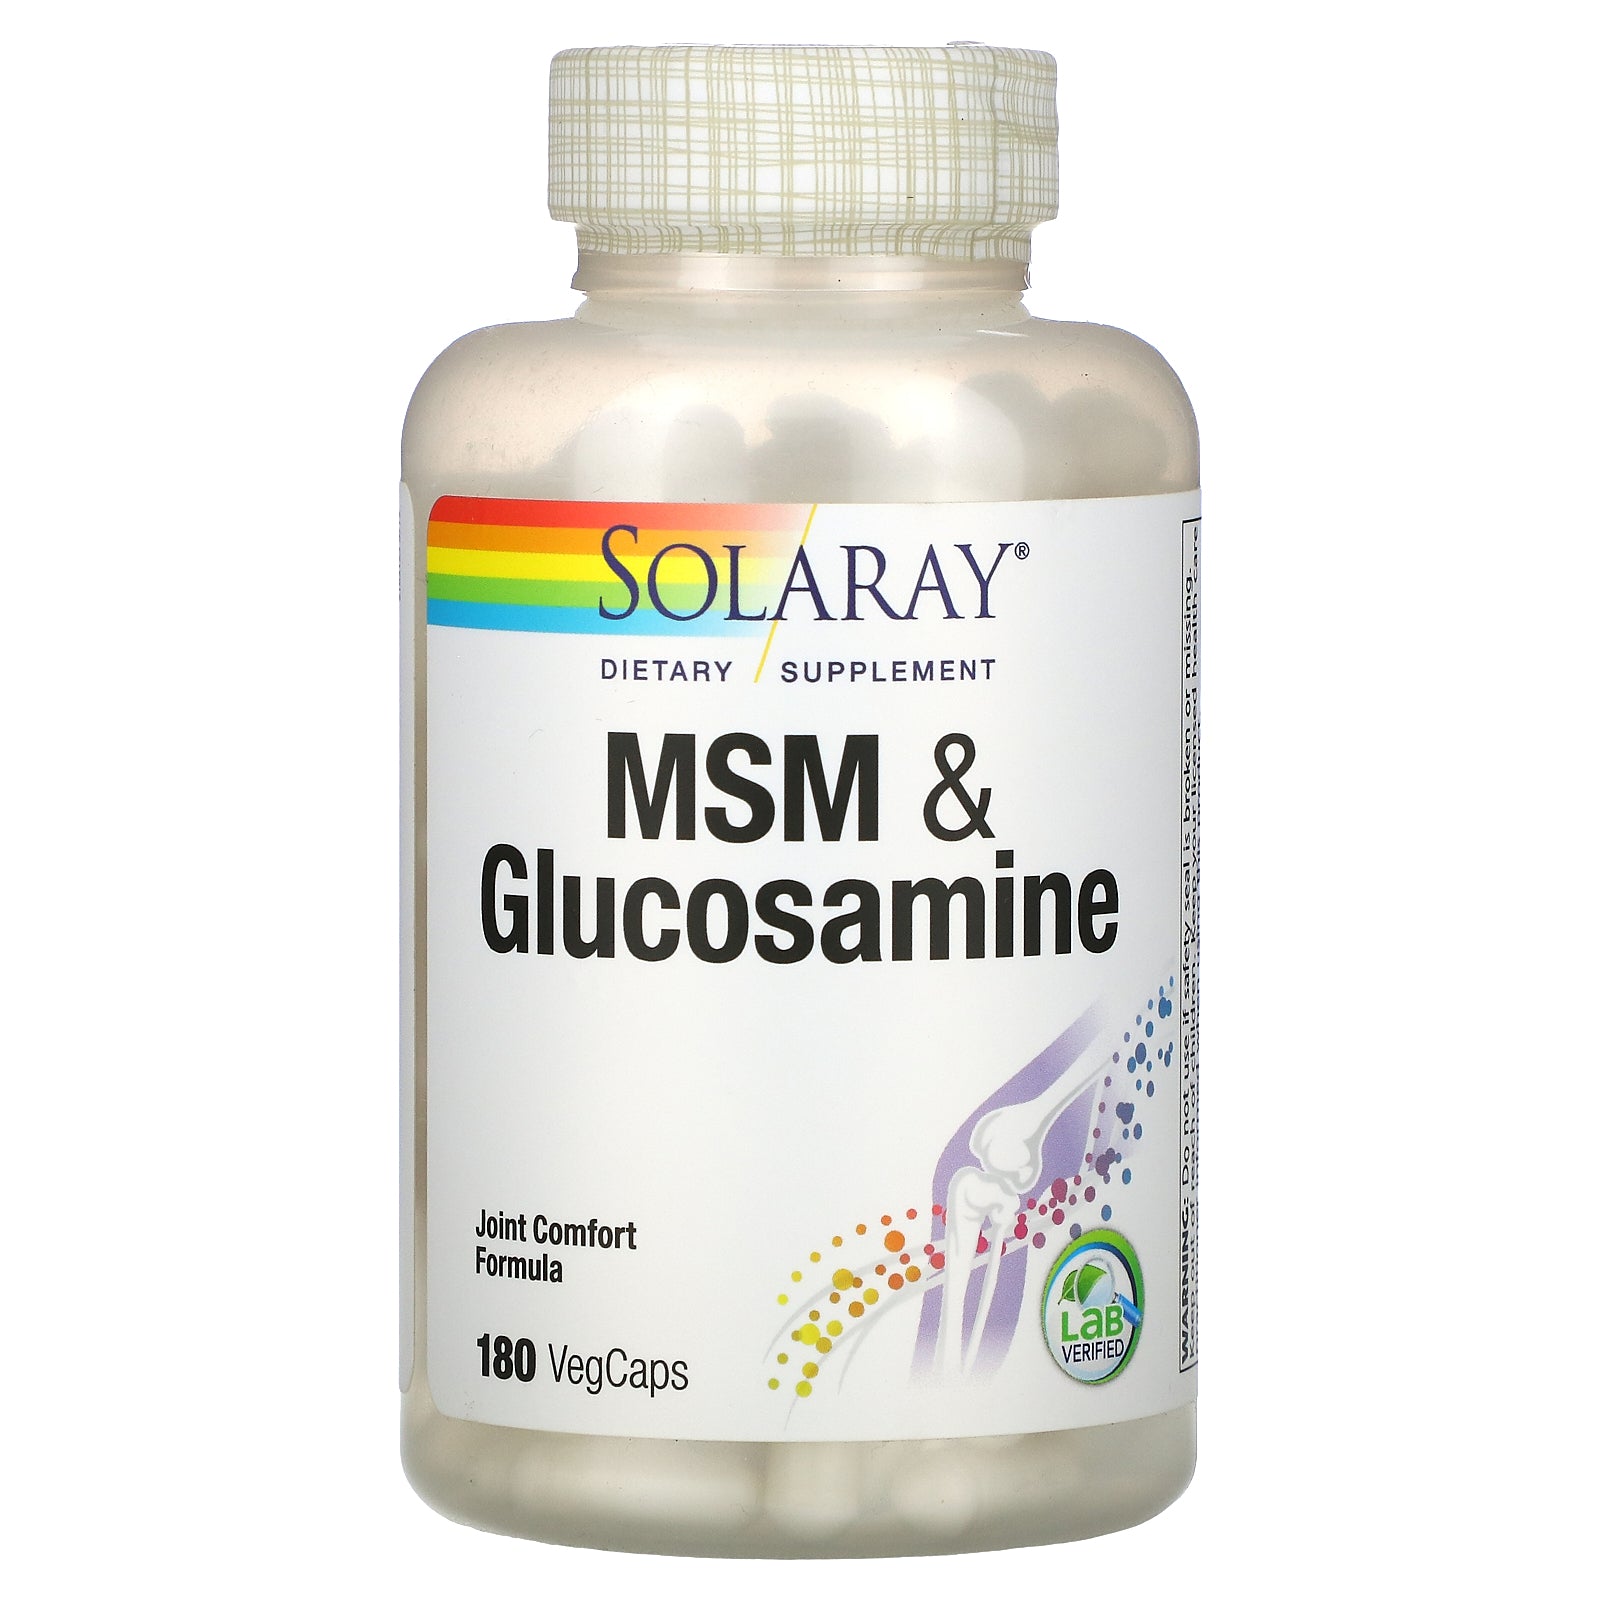 Solaray, MSM & Glucosamine